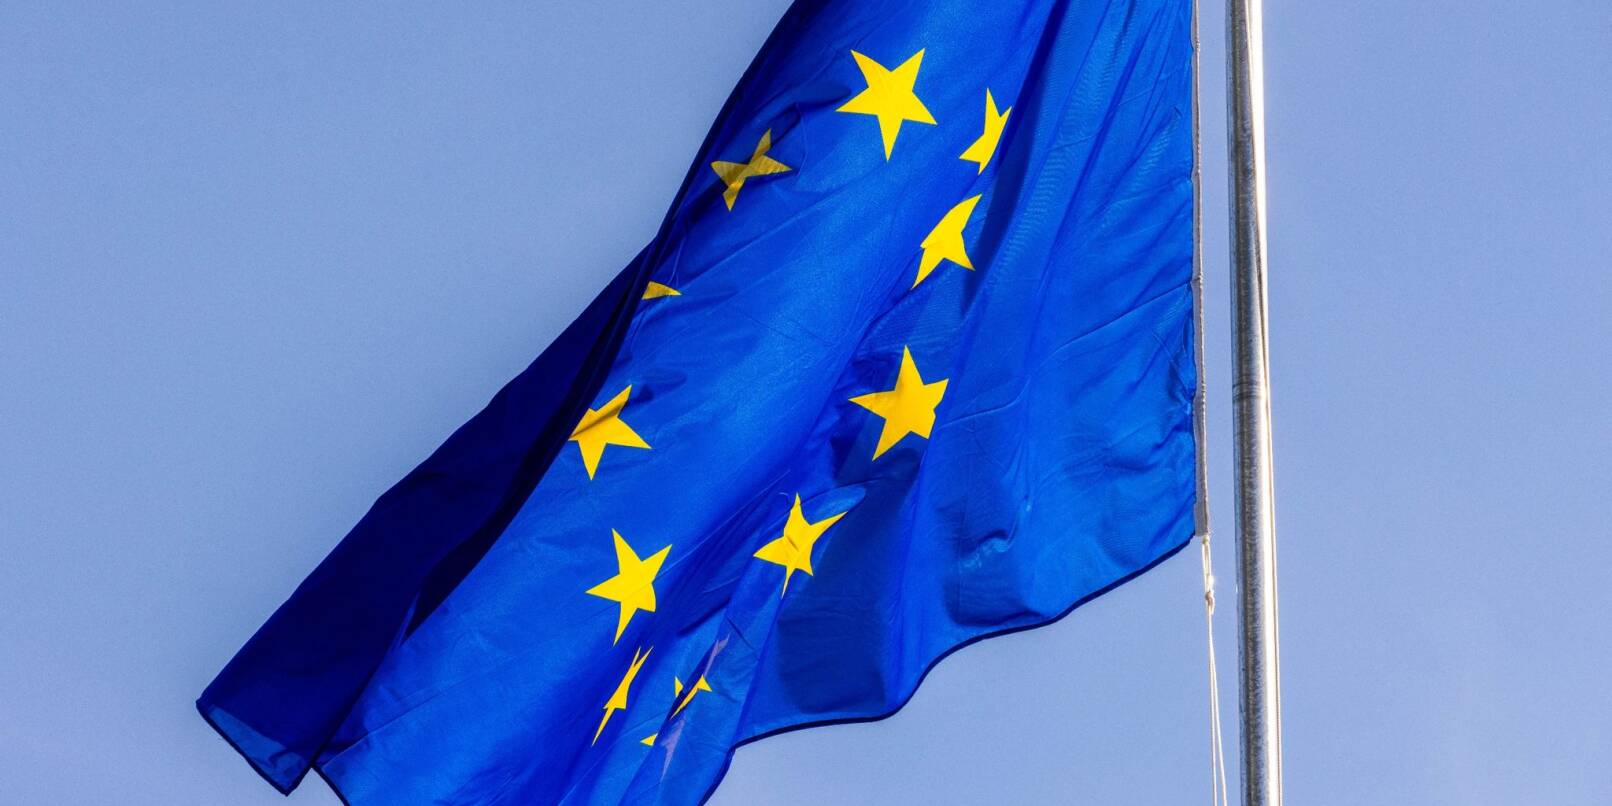 Die Flagge der Europäischen Union weht vor dem Gebäude des Europäischen Parlaments in Straßburg.